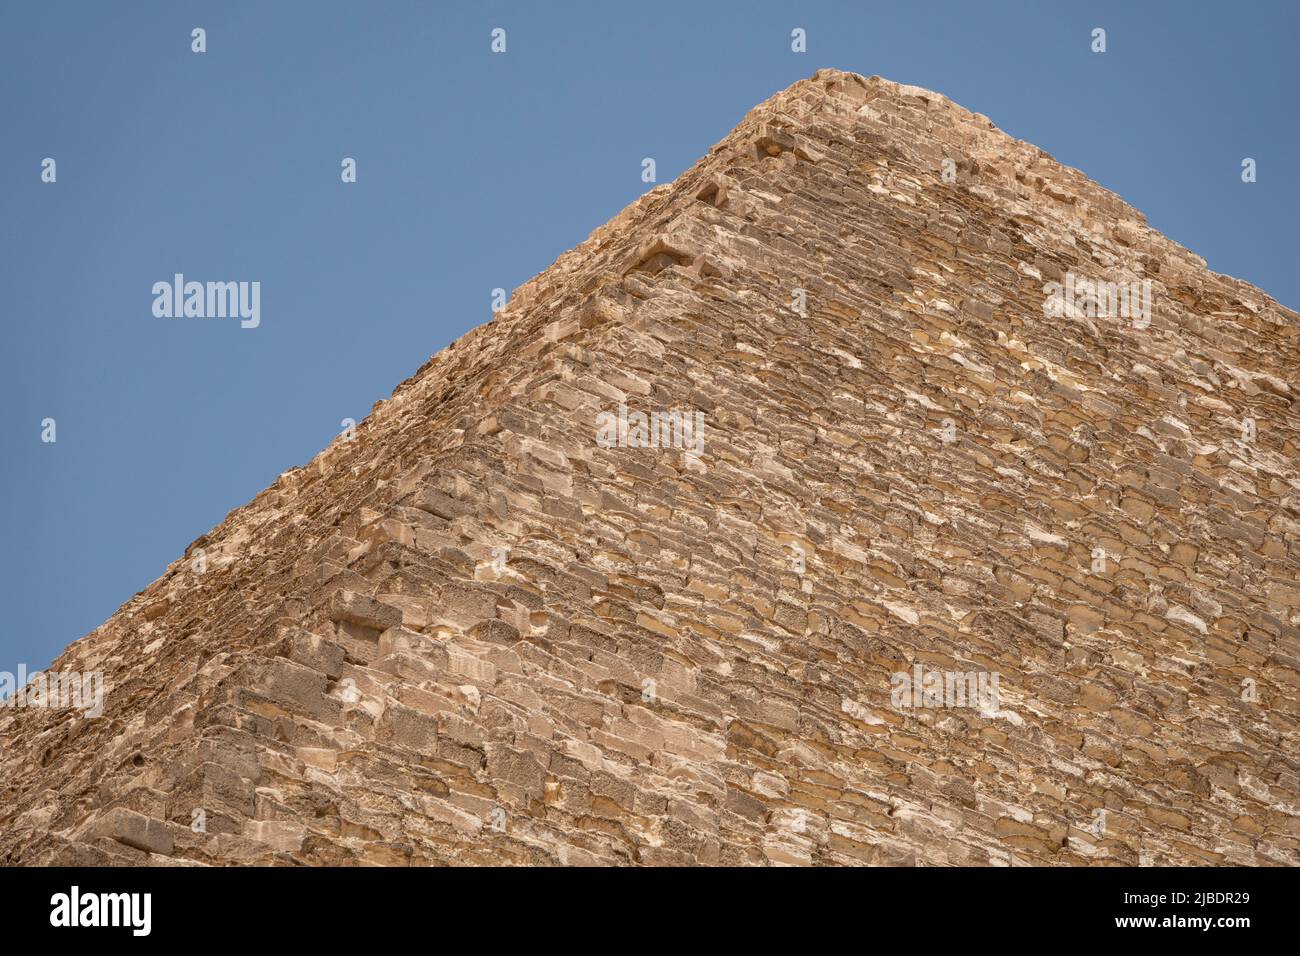 Khufu's Pyramid Giza plateau, Egypt Stock Photo